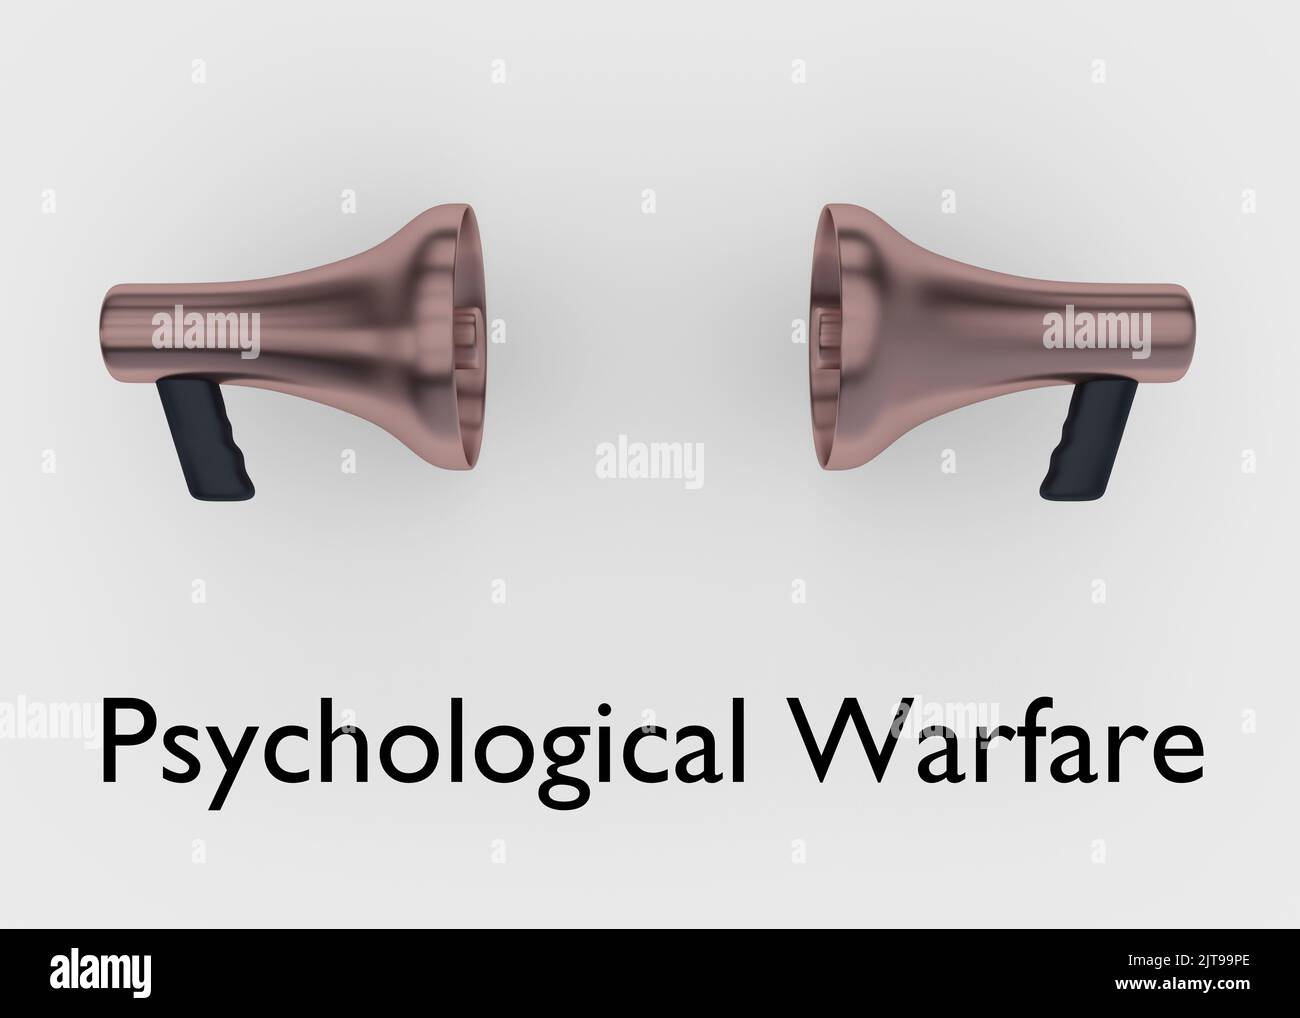 3D Illustration von zwei Megaphonen, die einander gegenüberstanden, mit dem Drehbuch Psychological Warfare. Stockfoto